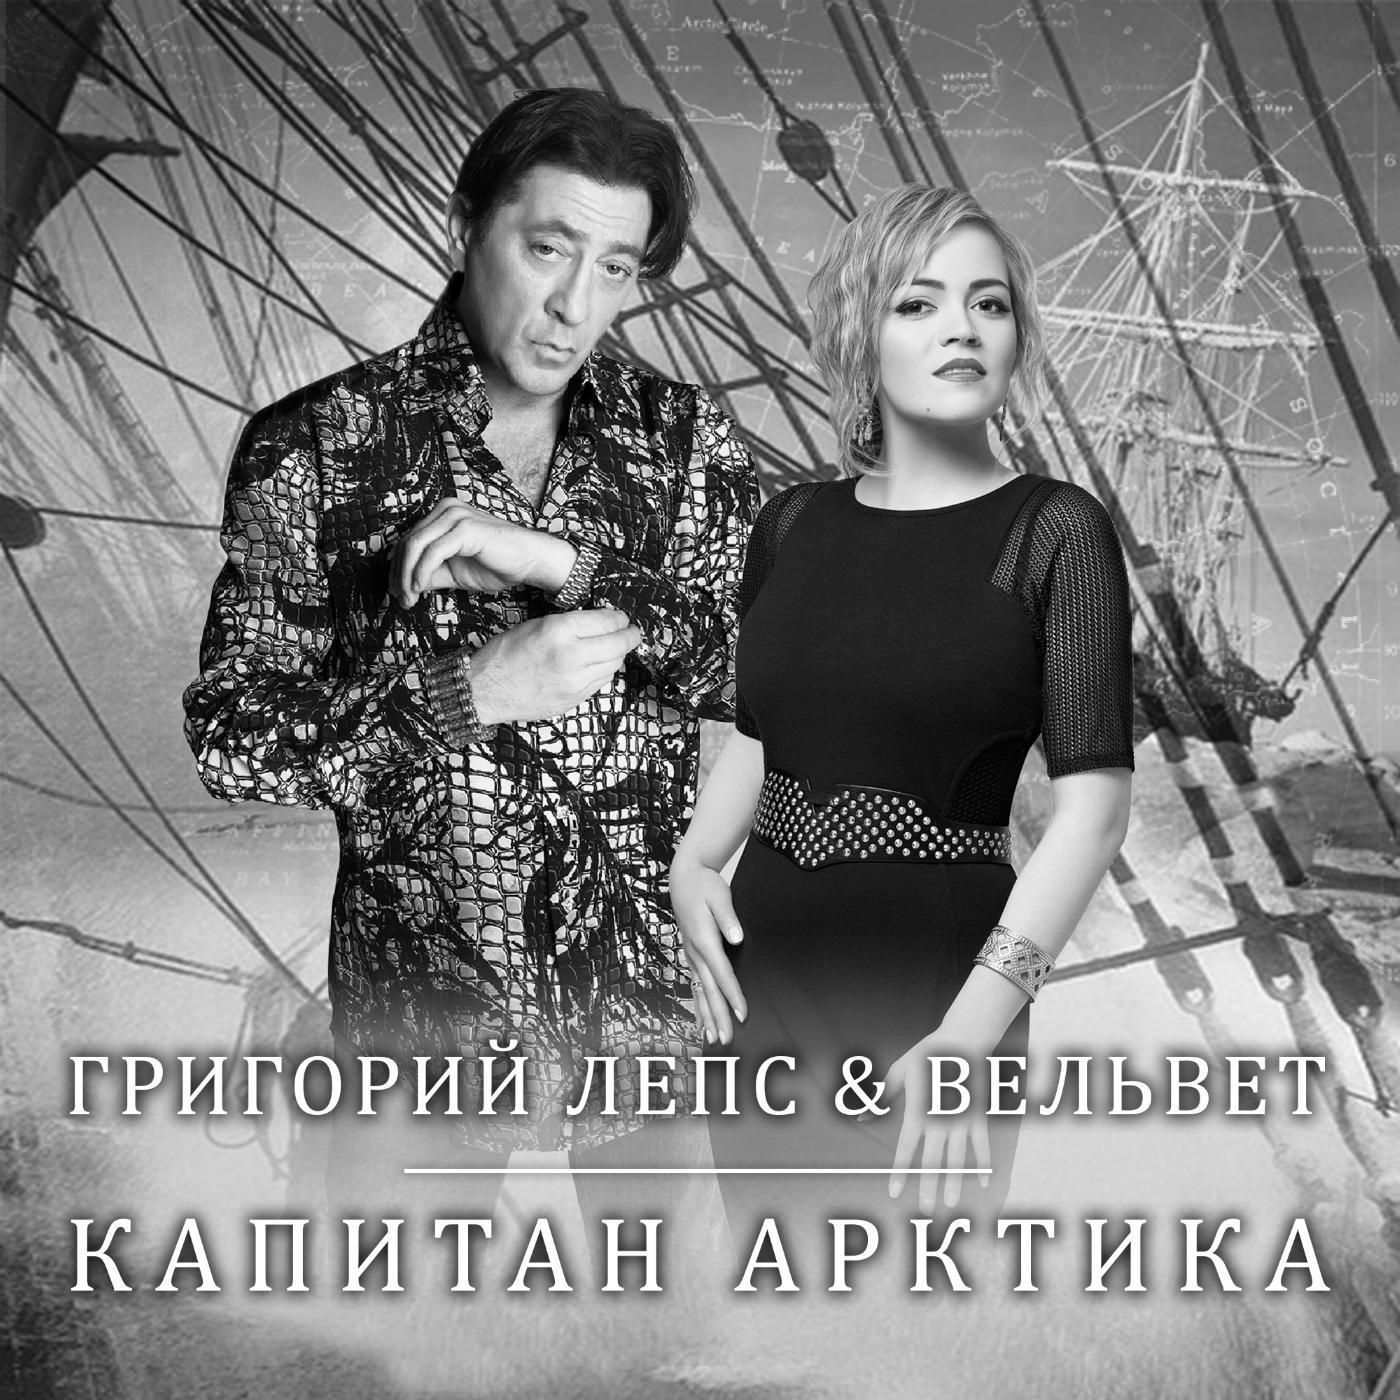 Альбом Капитан арктика исполнителя Вельвеt, Григорий Лепс